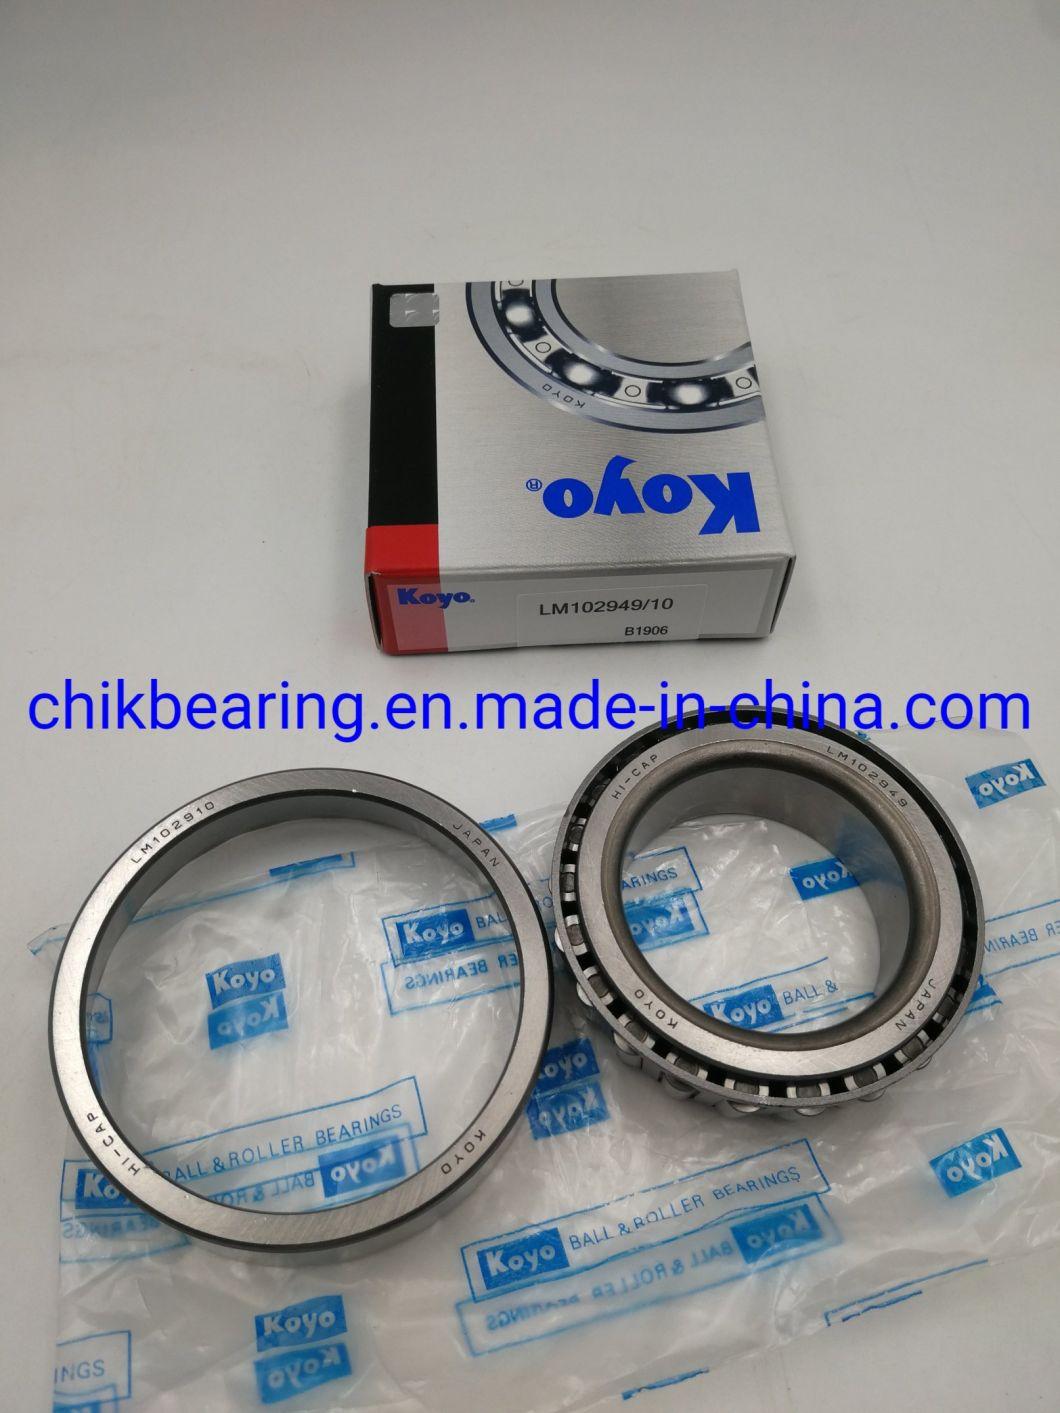 Timken SKF Koyo Wheel Bearing Transmission Bearing Gearbox Bearing Lm603049/Lm603011 Lm603049/11 Lm545849/Lm545810 Lm545849/10 Lm522546/Lm522510 Lm522546/10